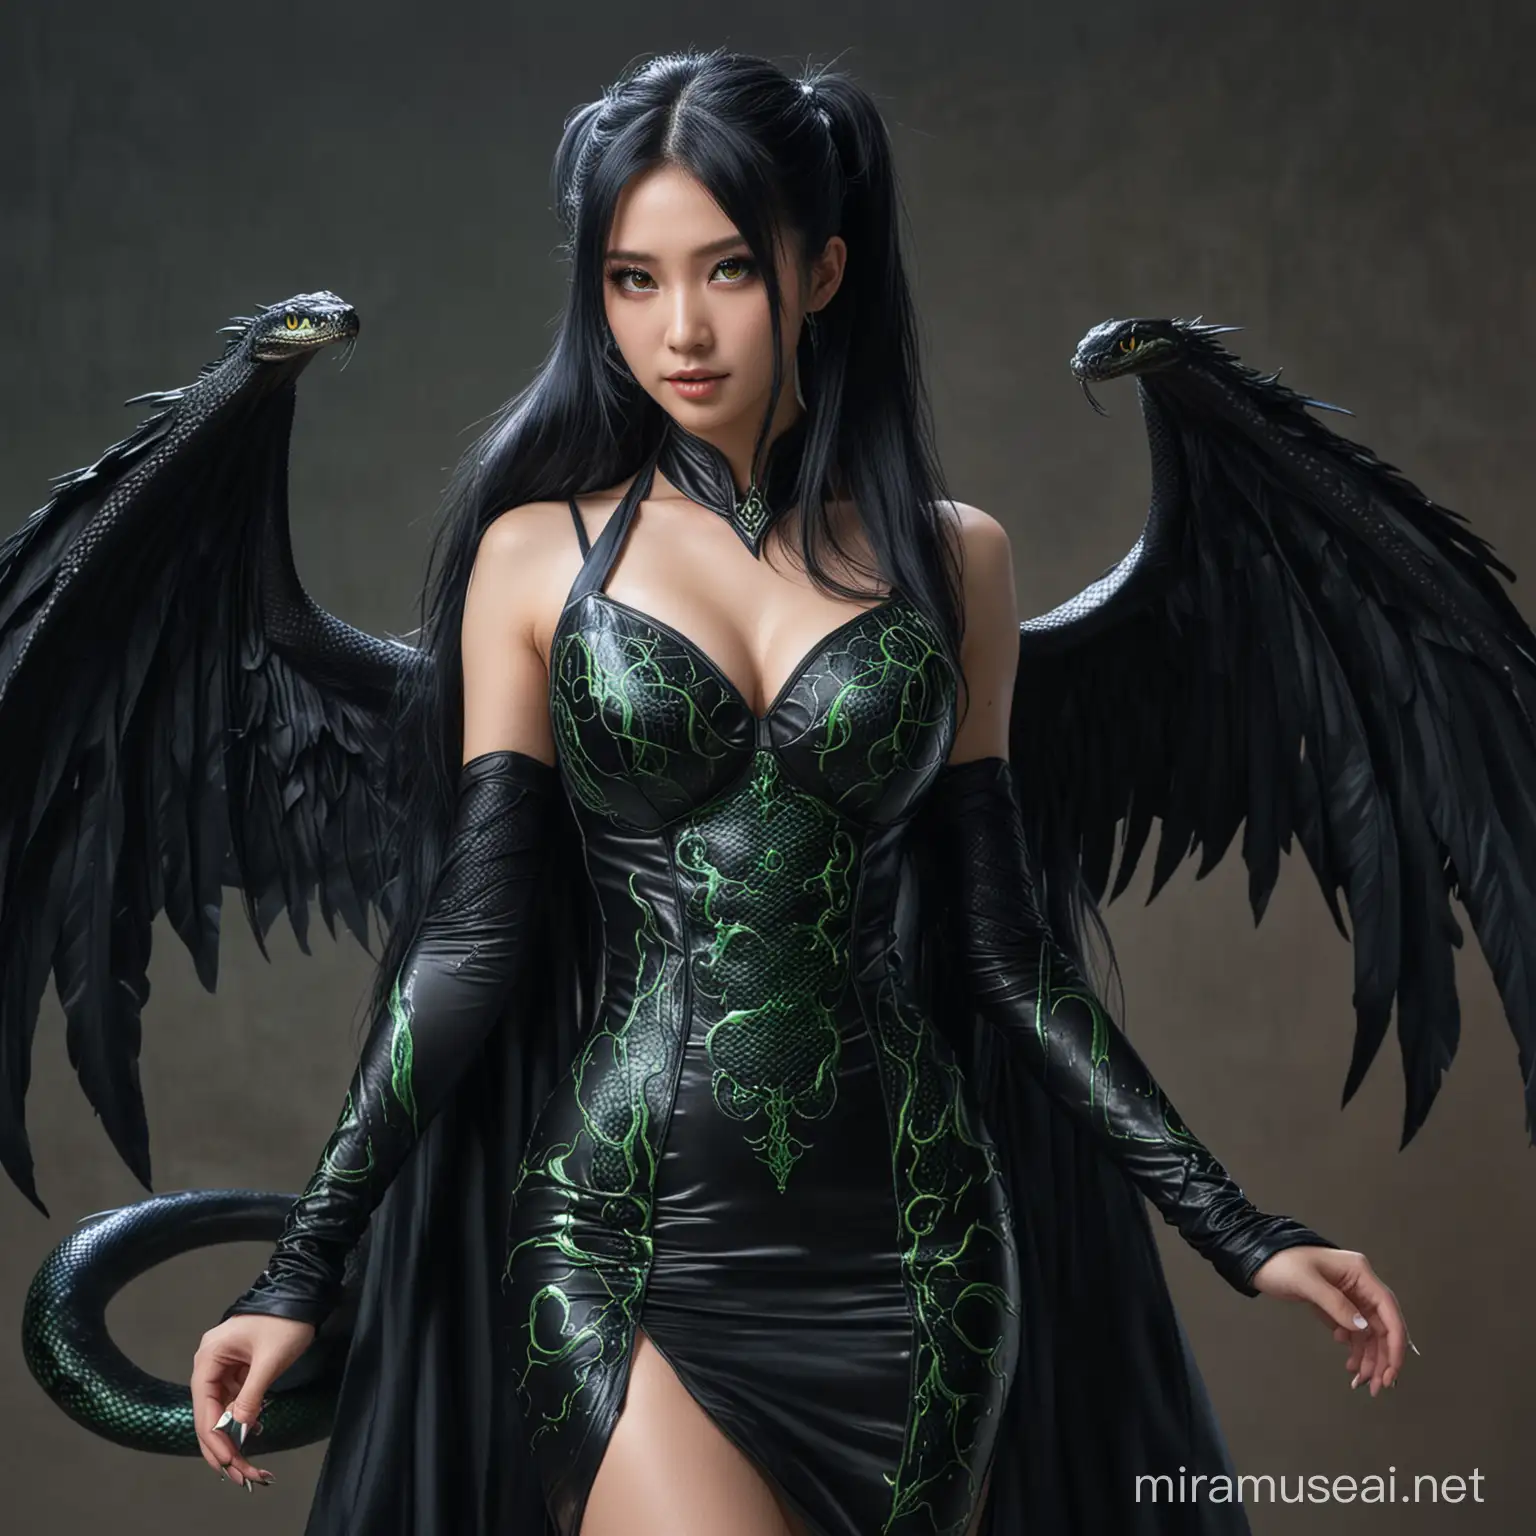 Japanische Frau, Lange schwarze Blaue Haare, Tight ponytail, glowing green eyes, Vampire wings, Black snake full body dress